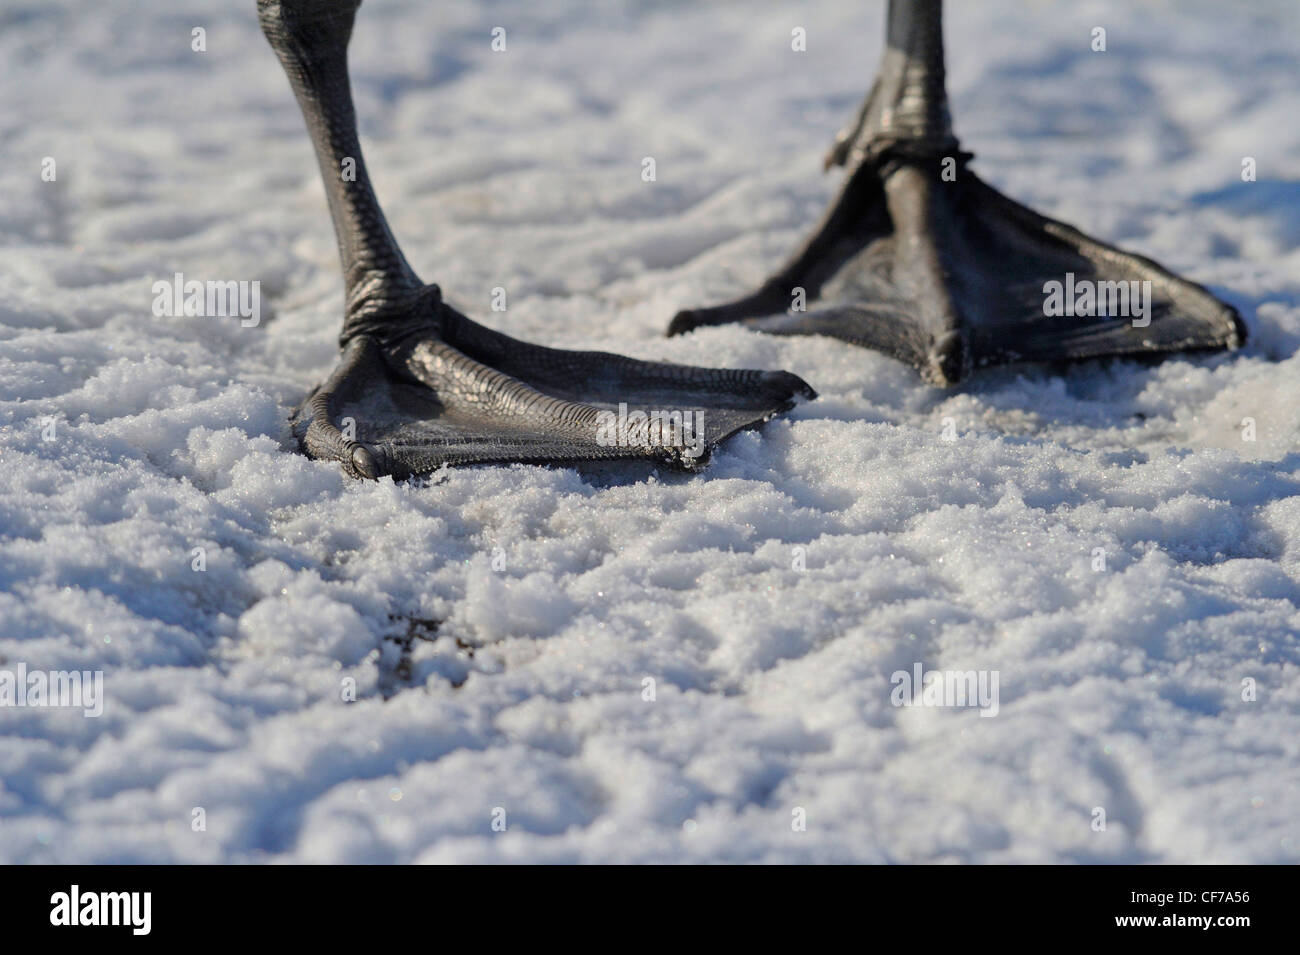 Große Schwimmfüße von einem Höckerschwan greifen auf einen gefrorenen Oberfläche eines Sees. Stockfoto